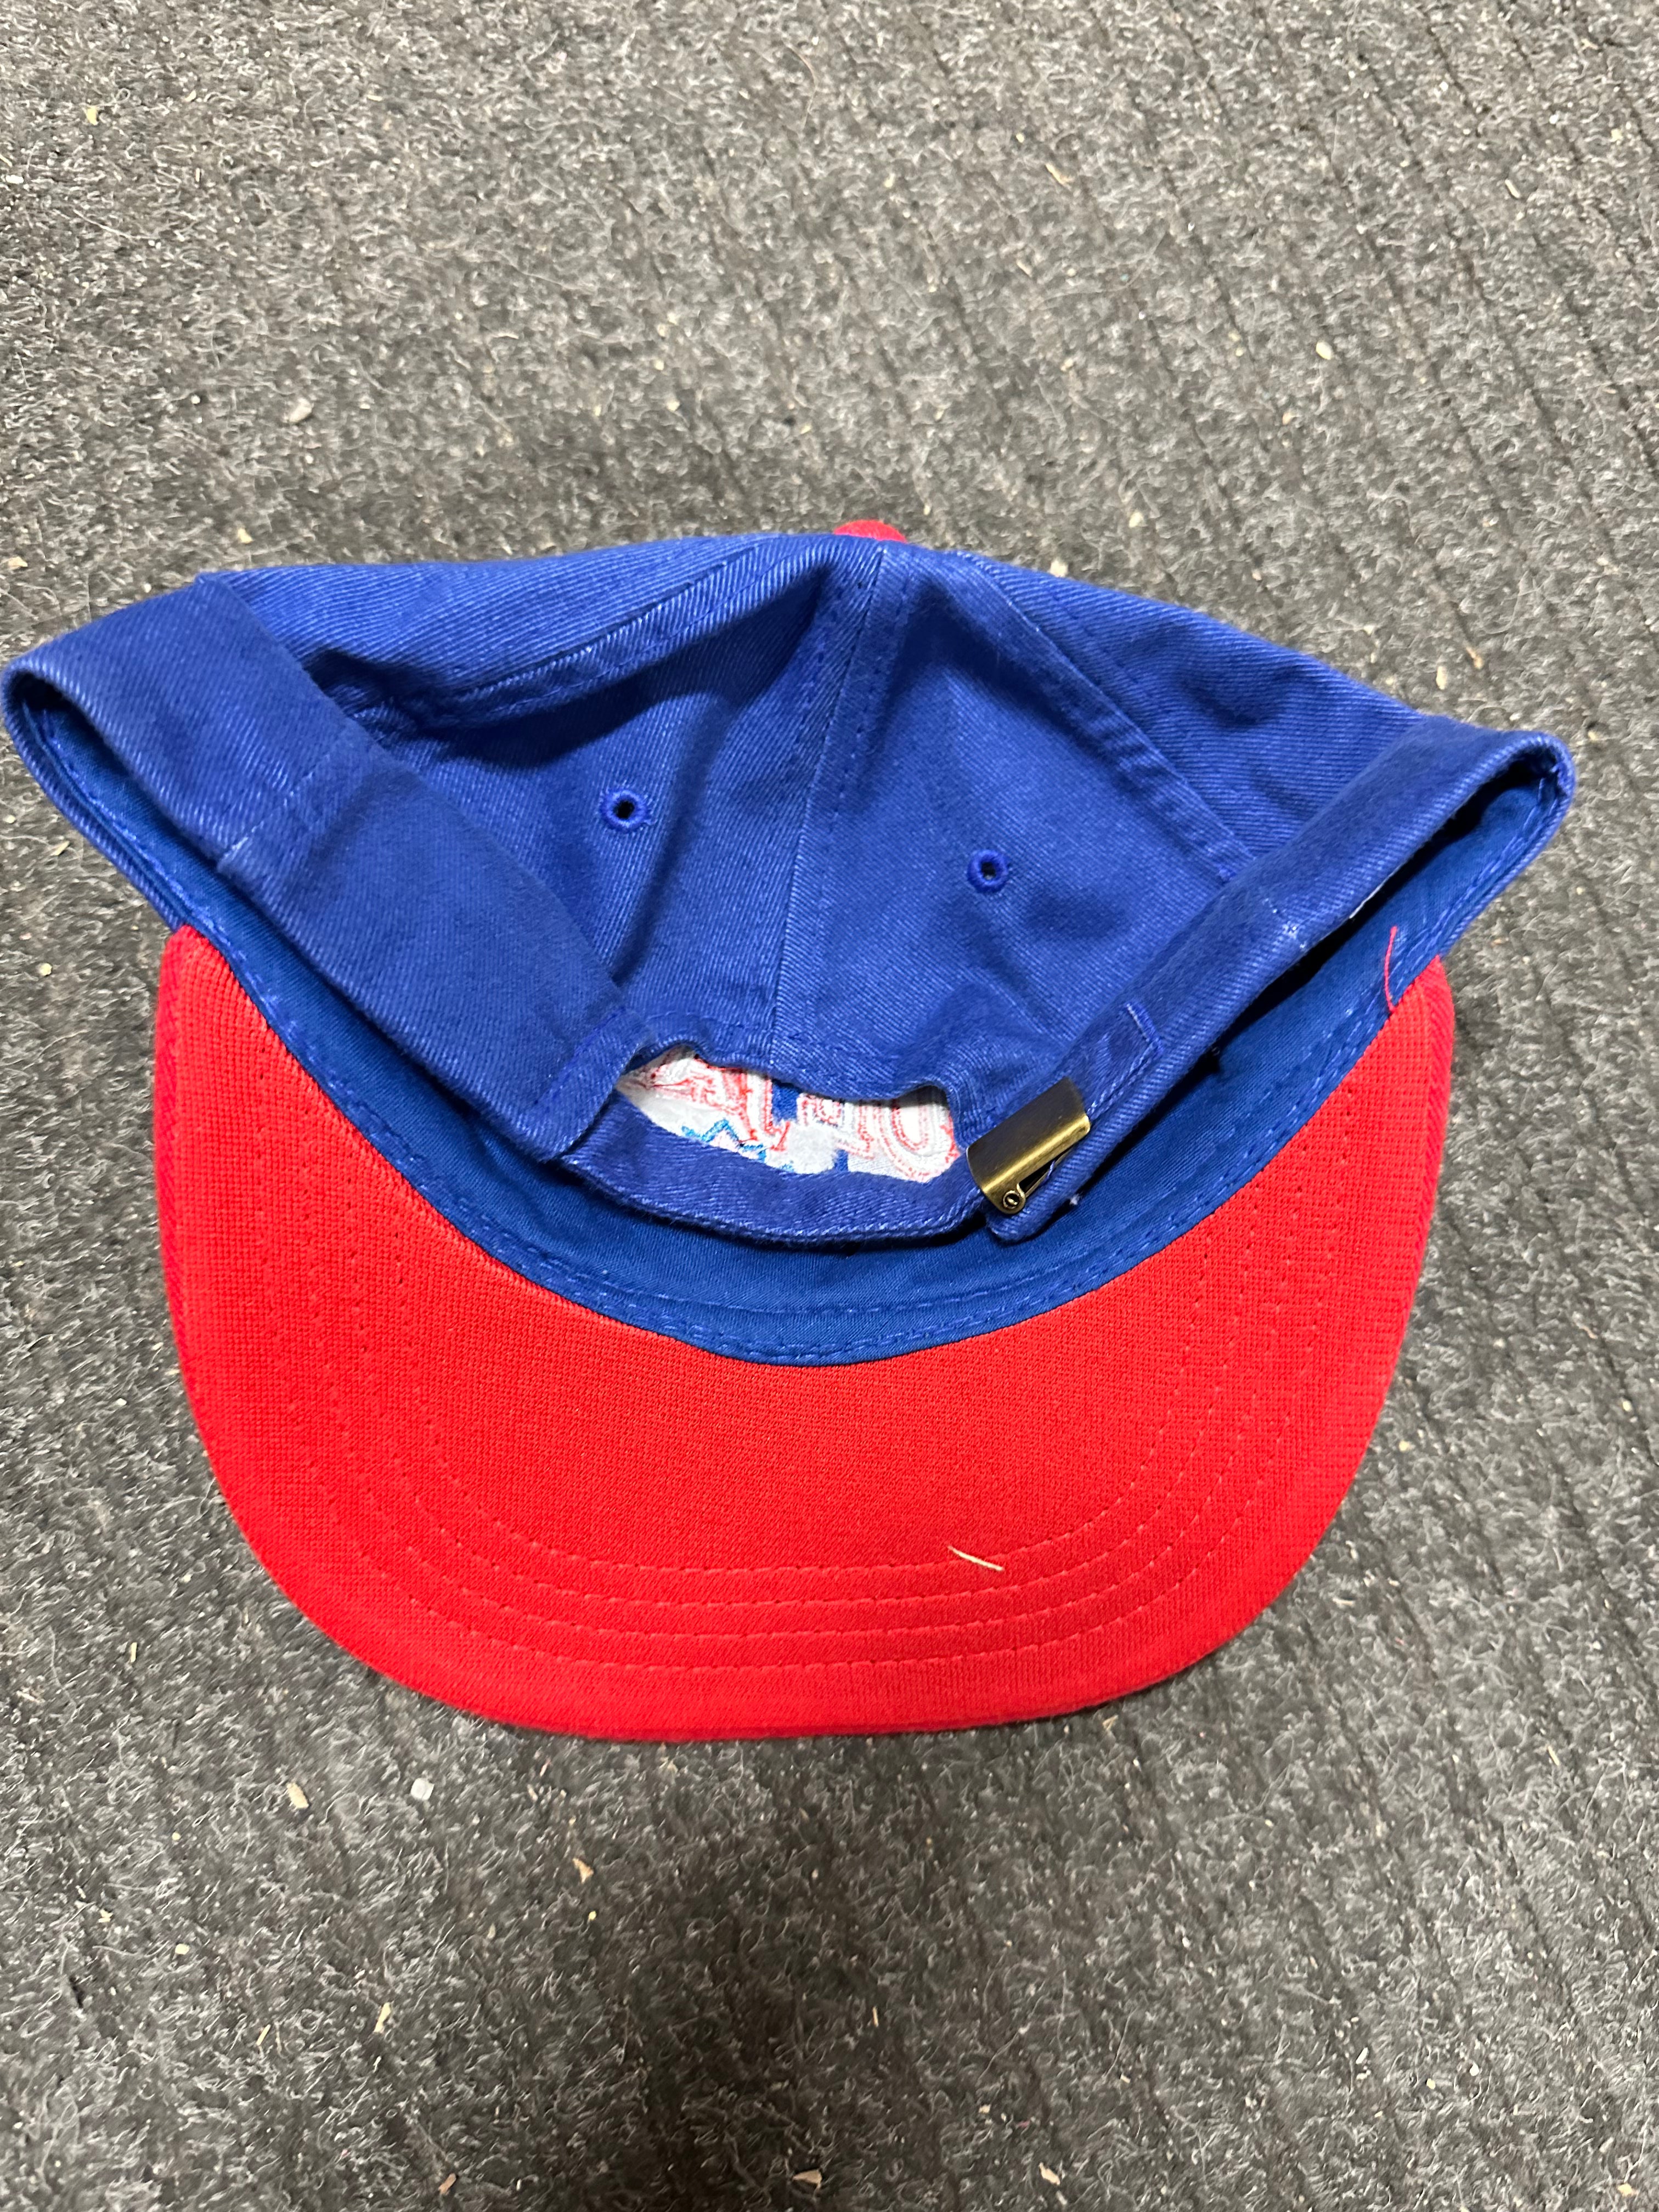 Blue Jays vintage baseball hat